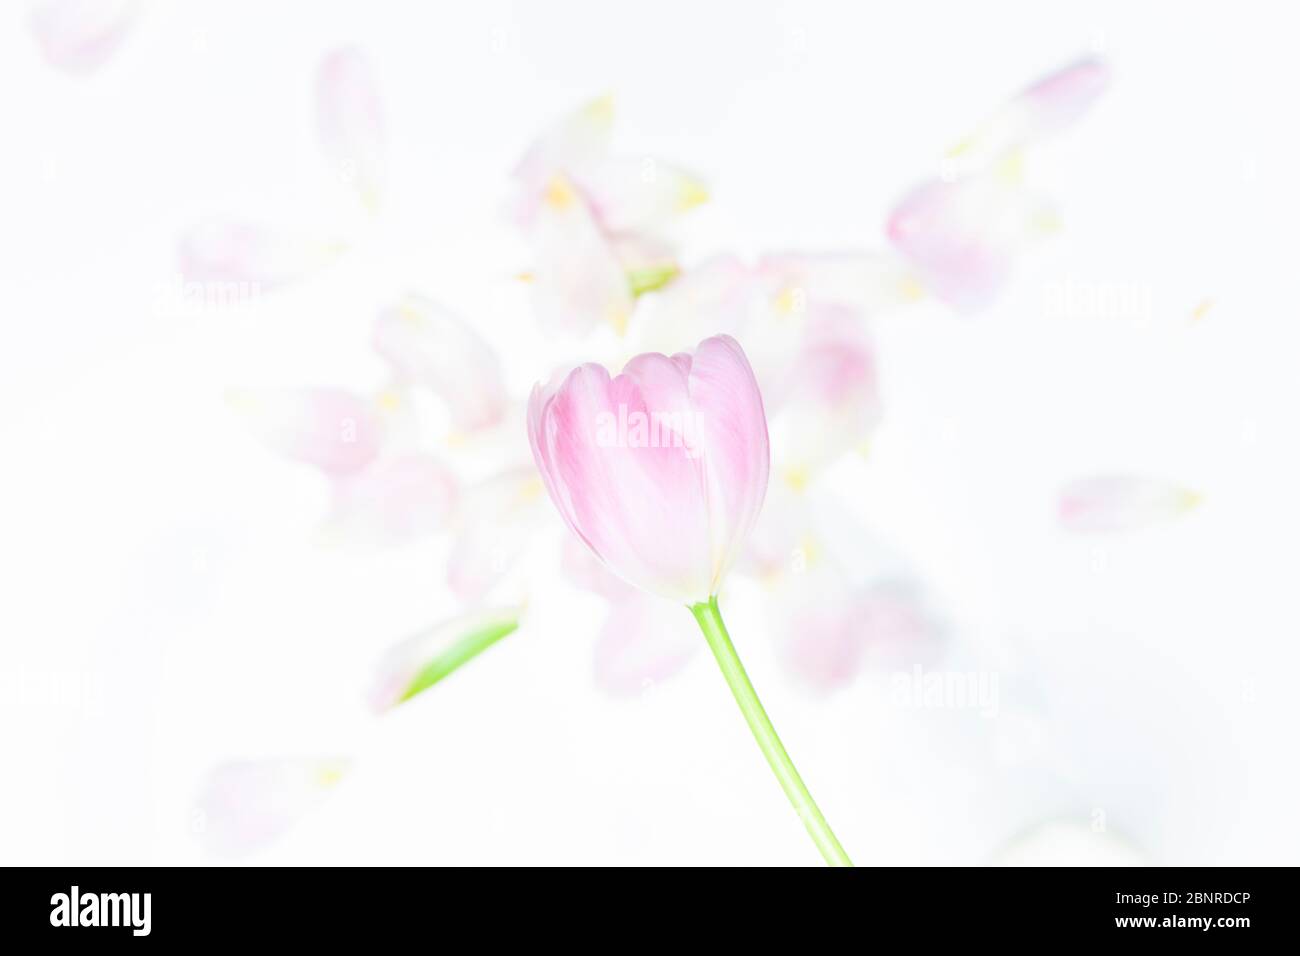 Petals of a tulip, flatlay Stock Photo